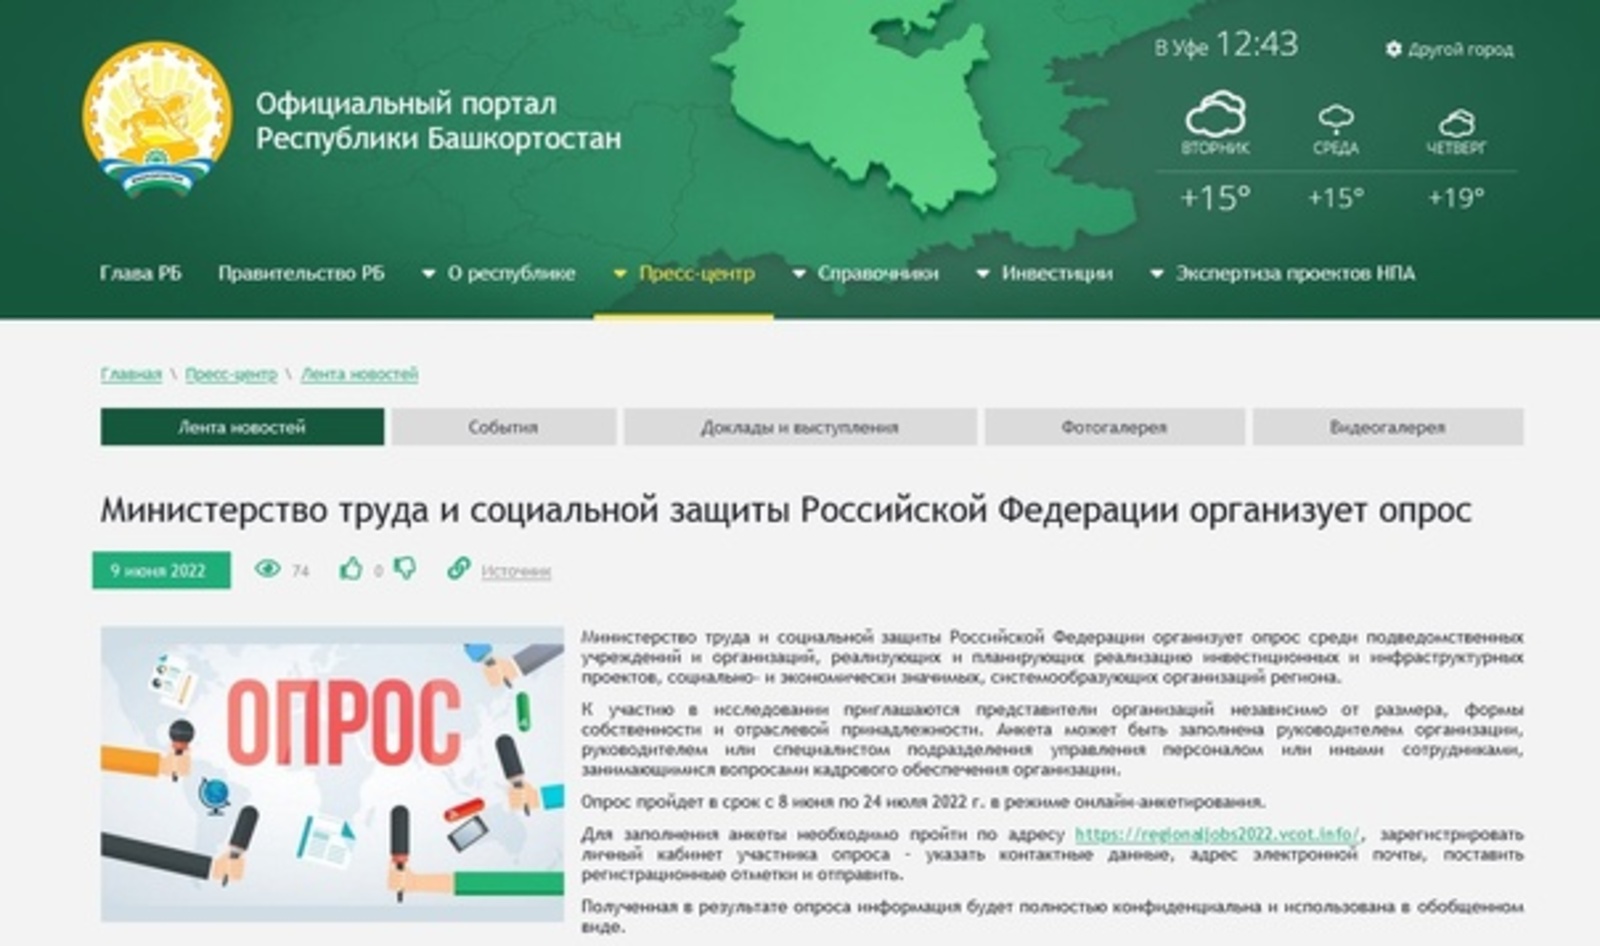 Министерство труда и социальной защиты Российской Федерации организует опрос